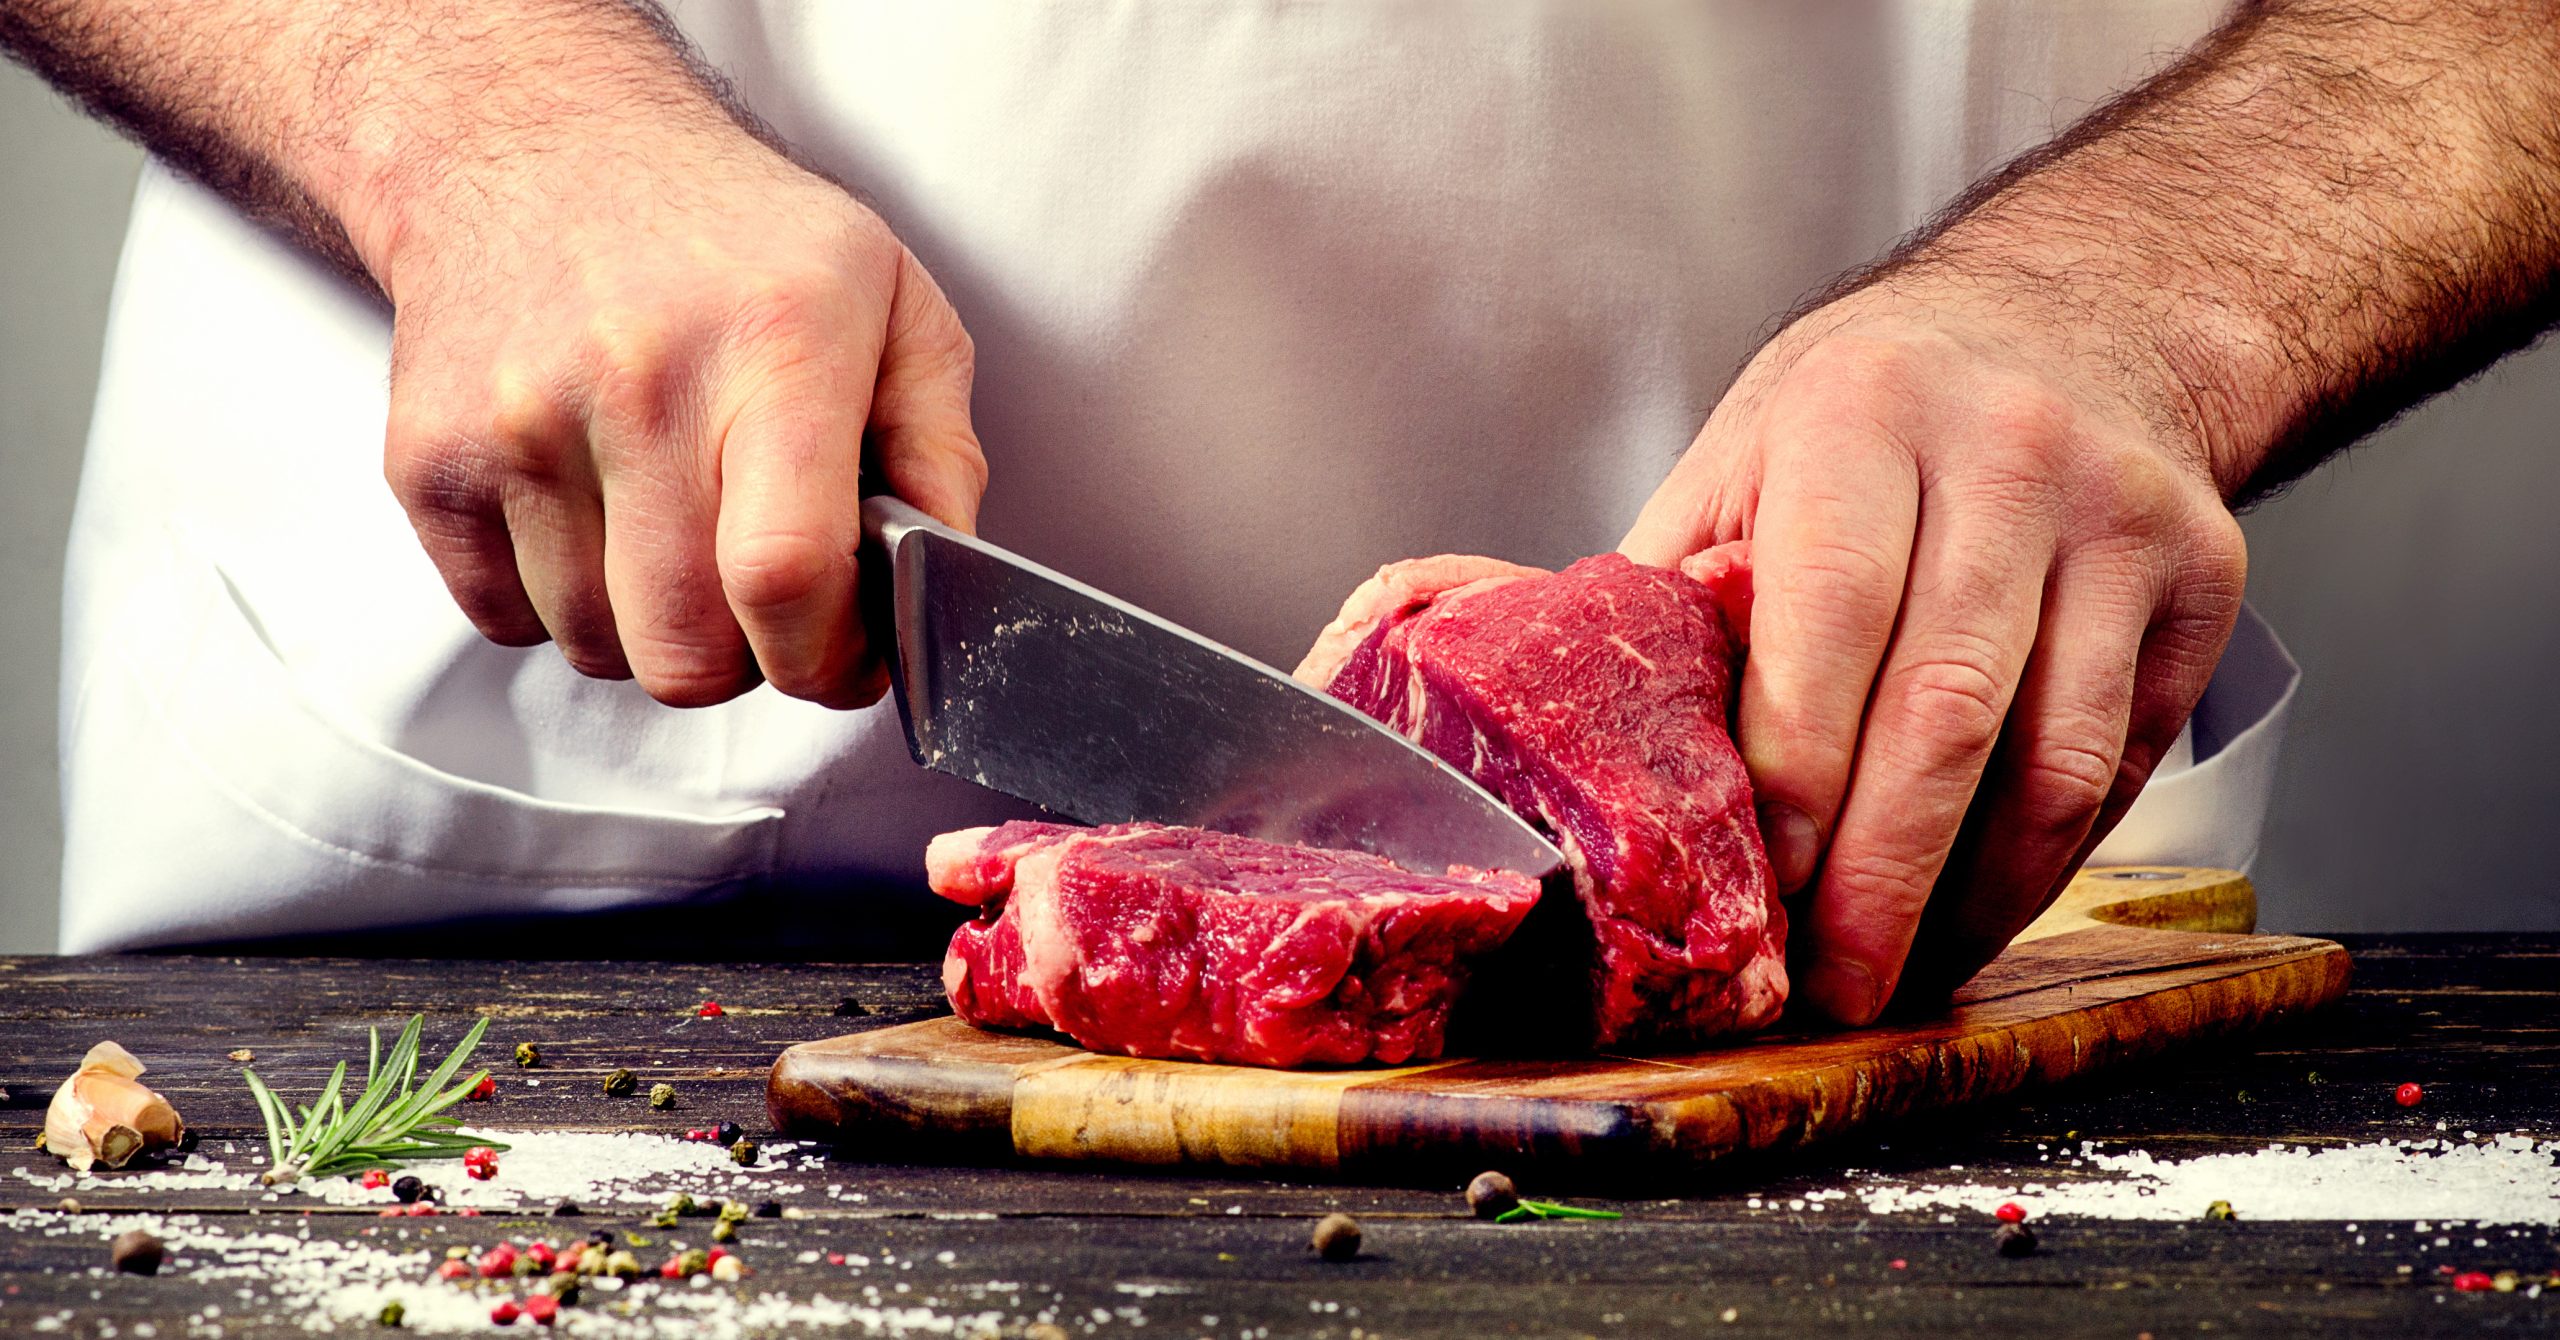 Crveno meso povećava holesterol, a ovi ljudi nikako ne bi trebalo da ga jedu